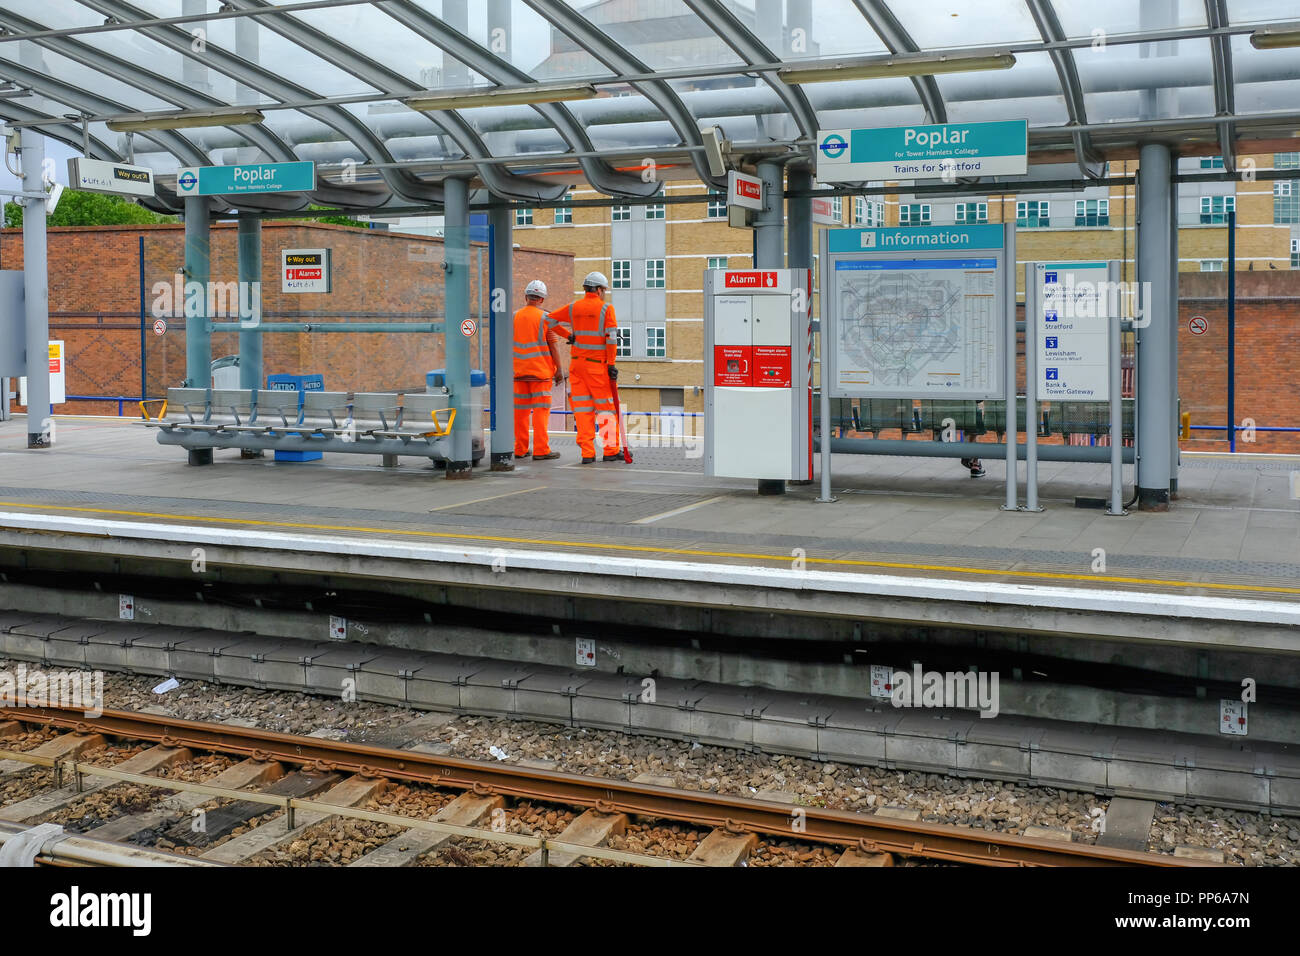 Il pioppo, London, Regno Unito - 18 agosto 2018: due operai vestiti di alta viz uniforme in arancione. Mostra la workment in attesa sulla piattaforma di DLR per un treno. Foto Stock